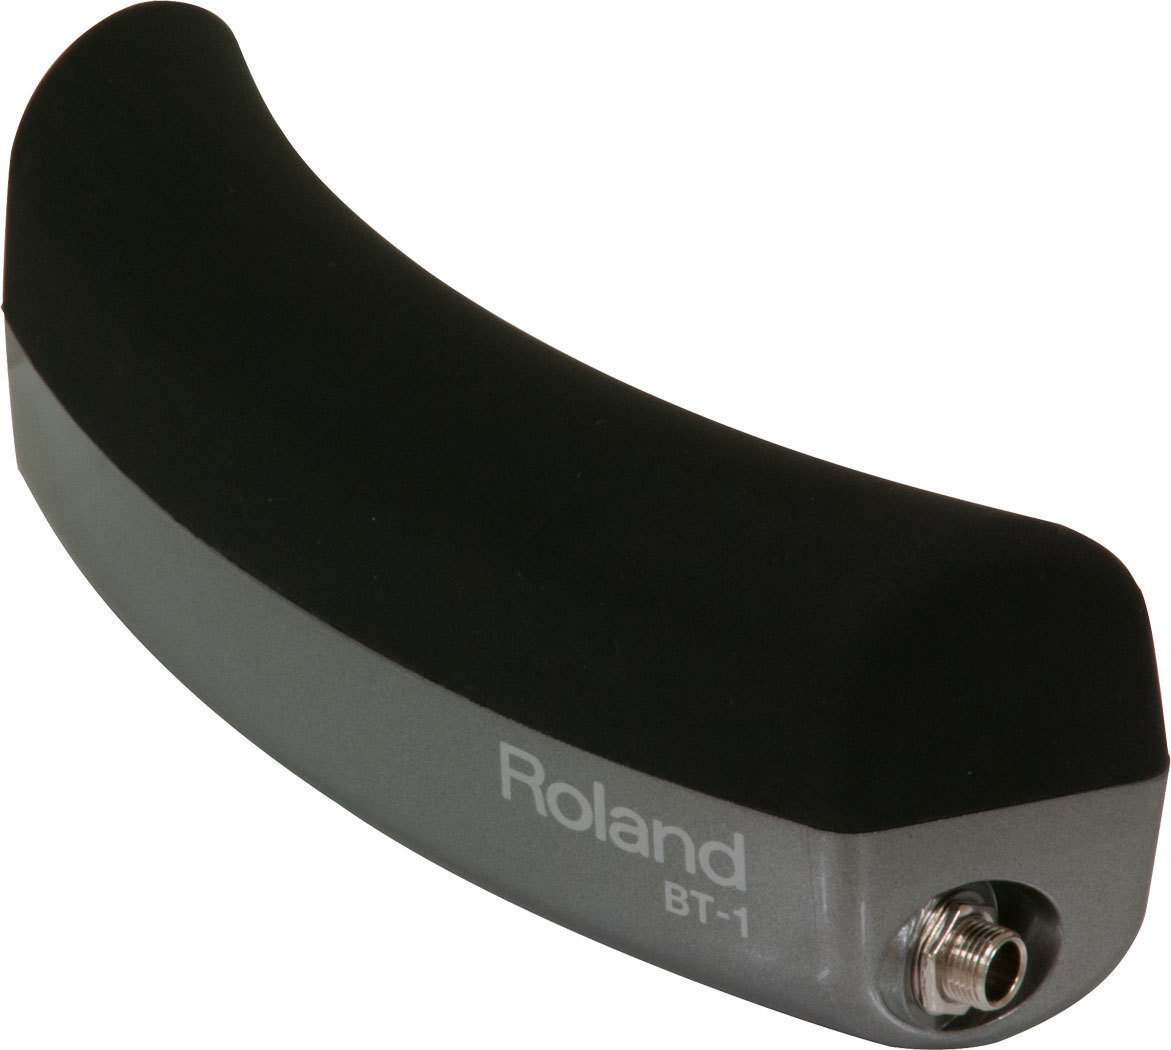 Pad pentru tobe electronice Roland BT-1